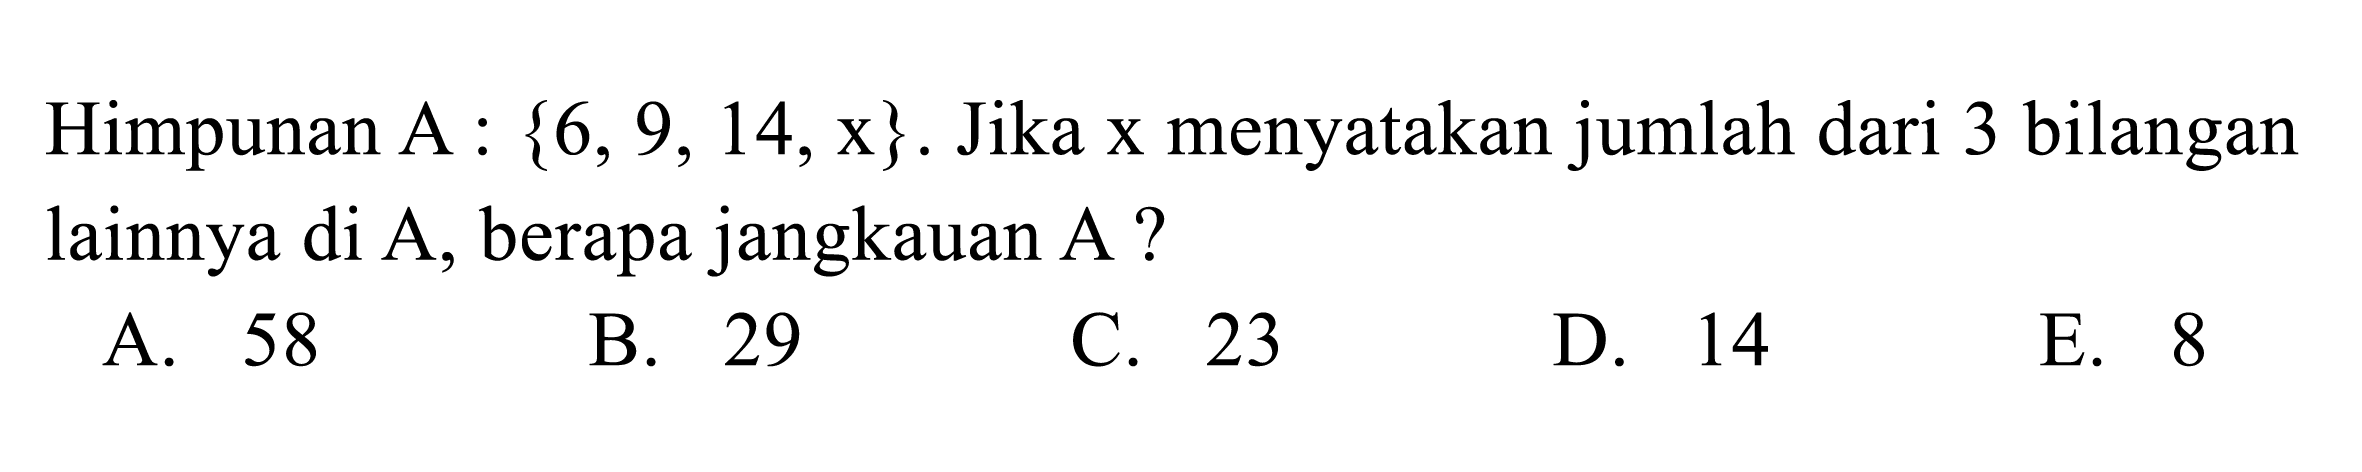 Himpunan A : {6, 9, 14, x}. Jika x menyatakan jumlah dari 3 bilangan lainnya di A, berapa jangkauan A?